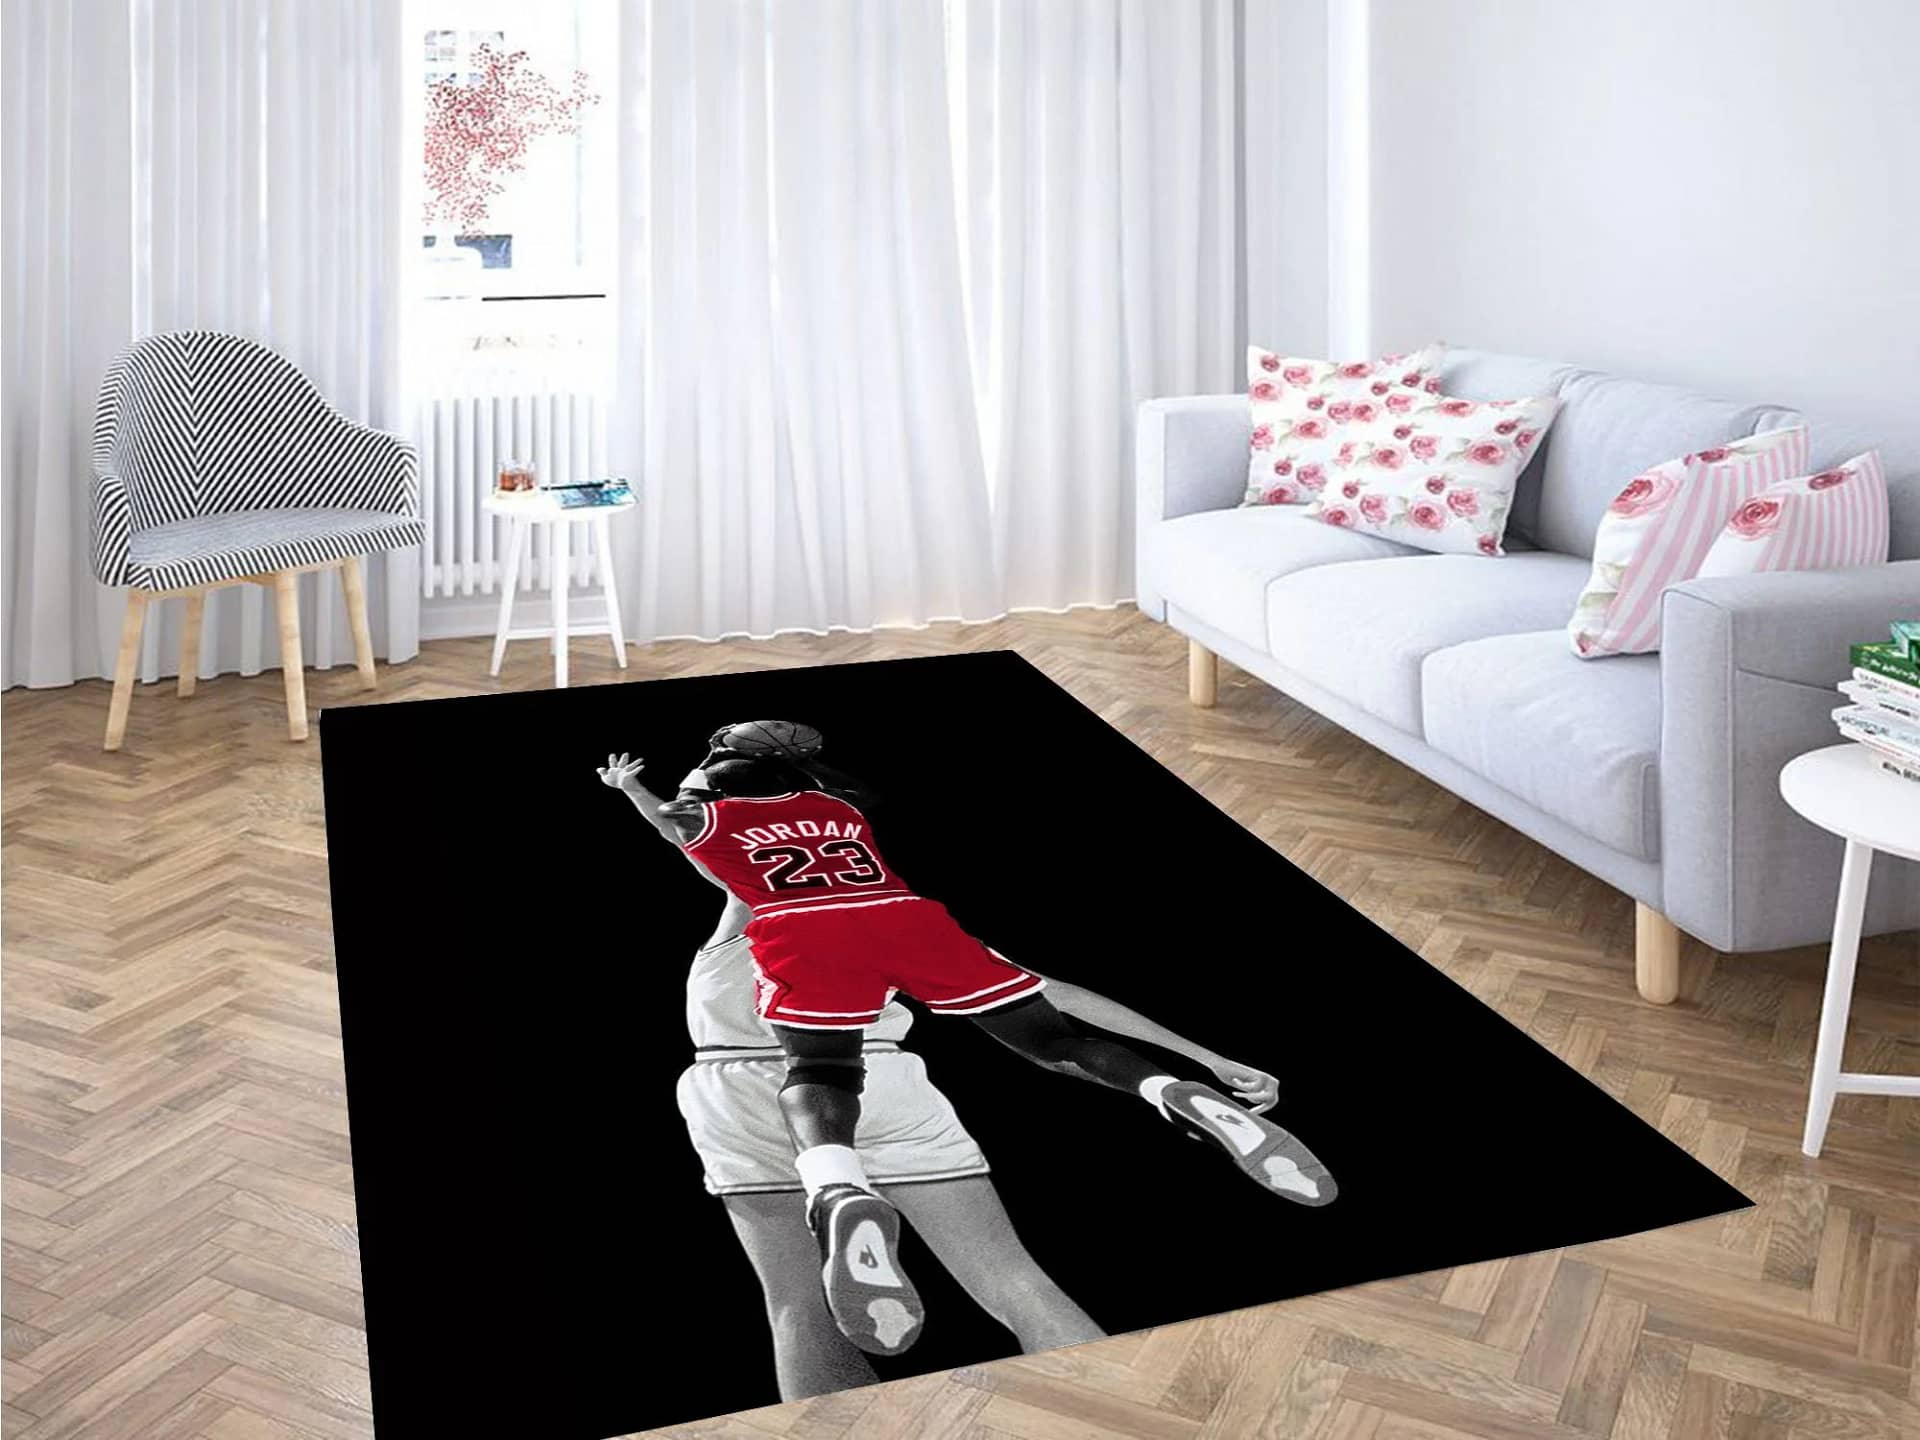 Jordan Player American Basketball Carpet Rug